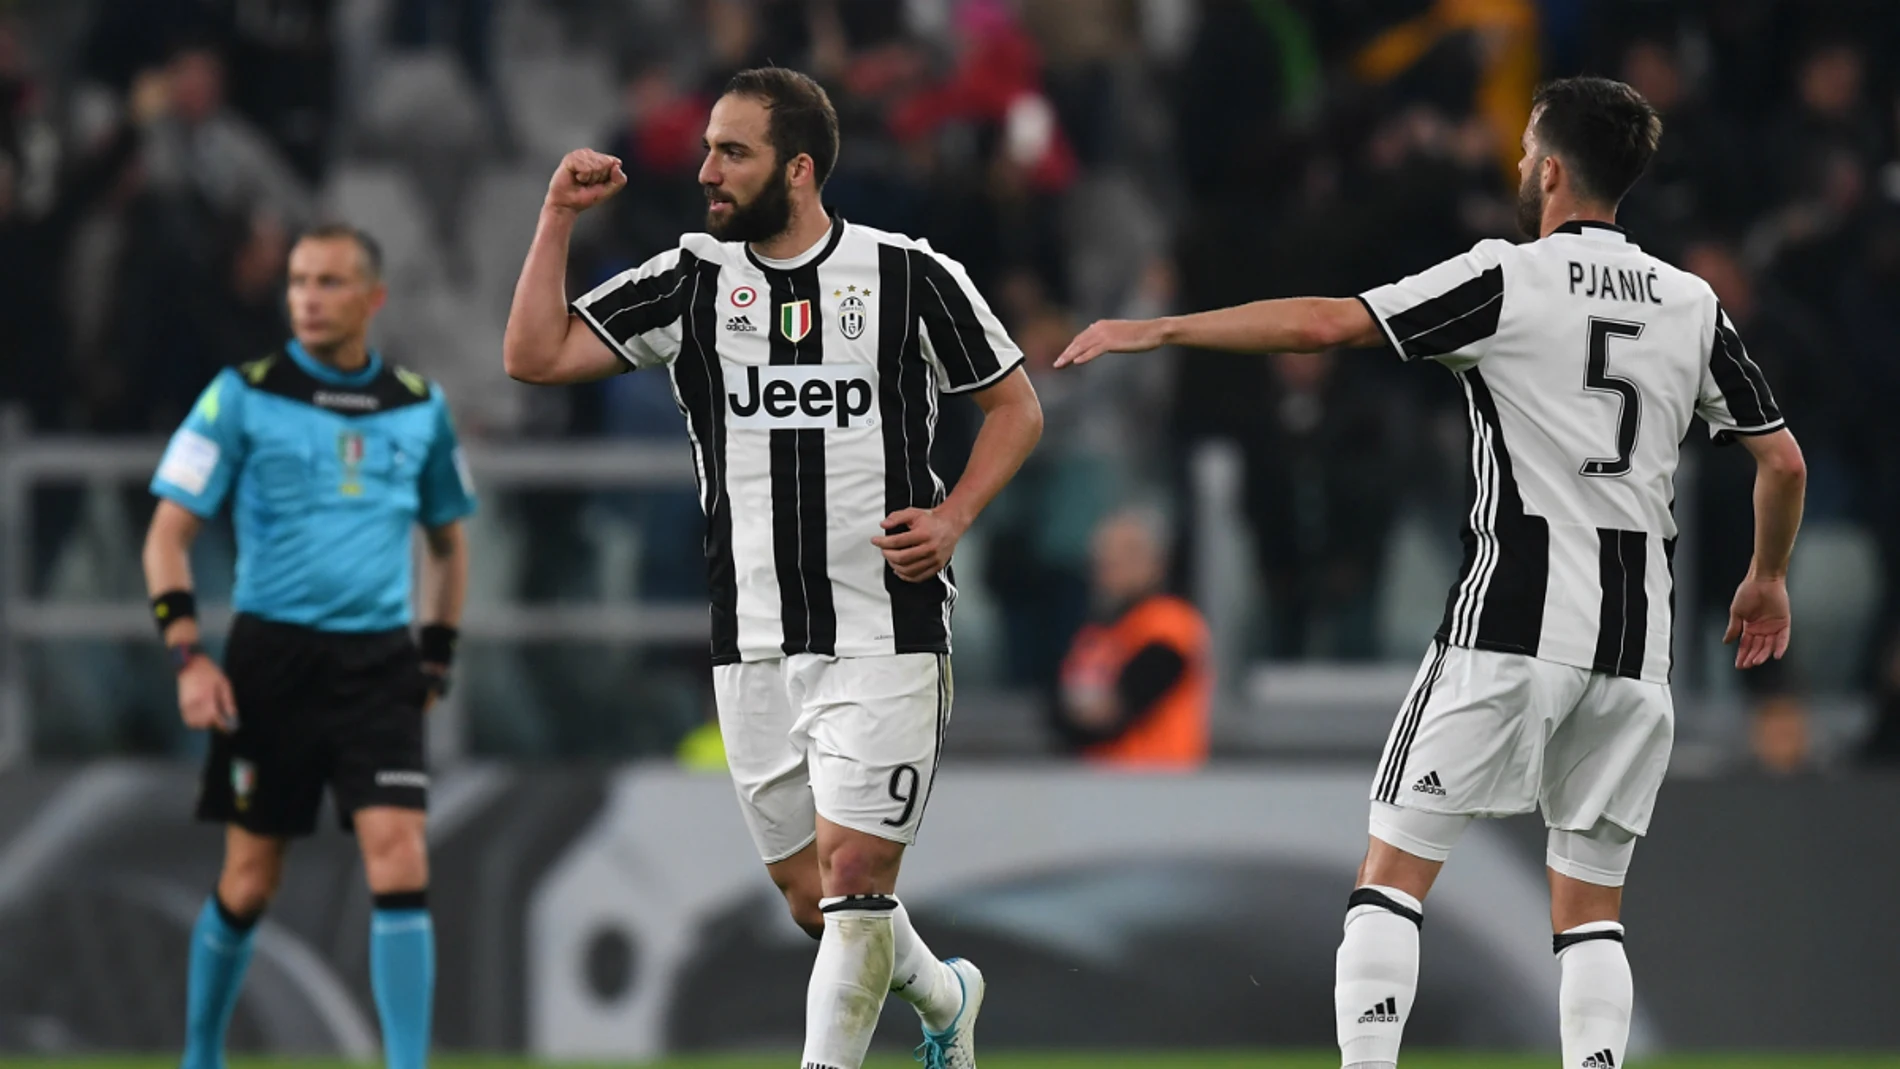 Higuain celebra un gol con la Juventus